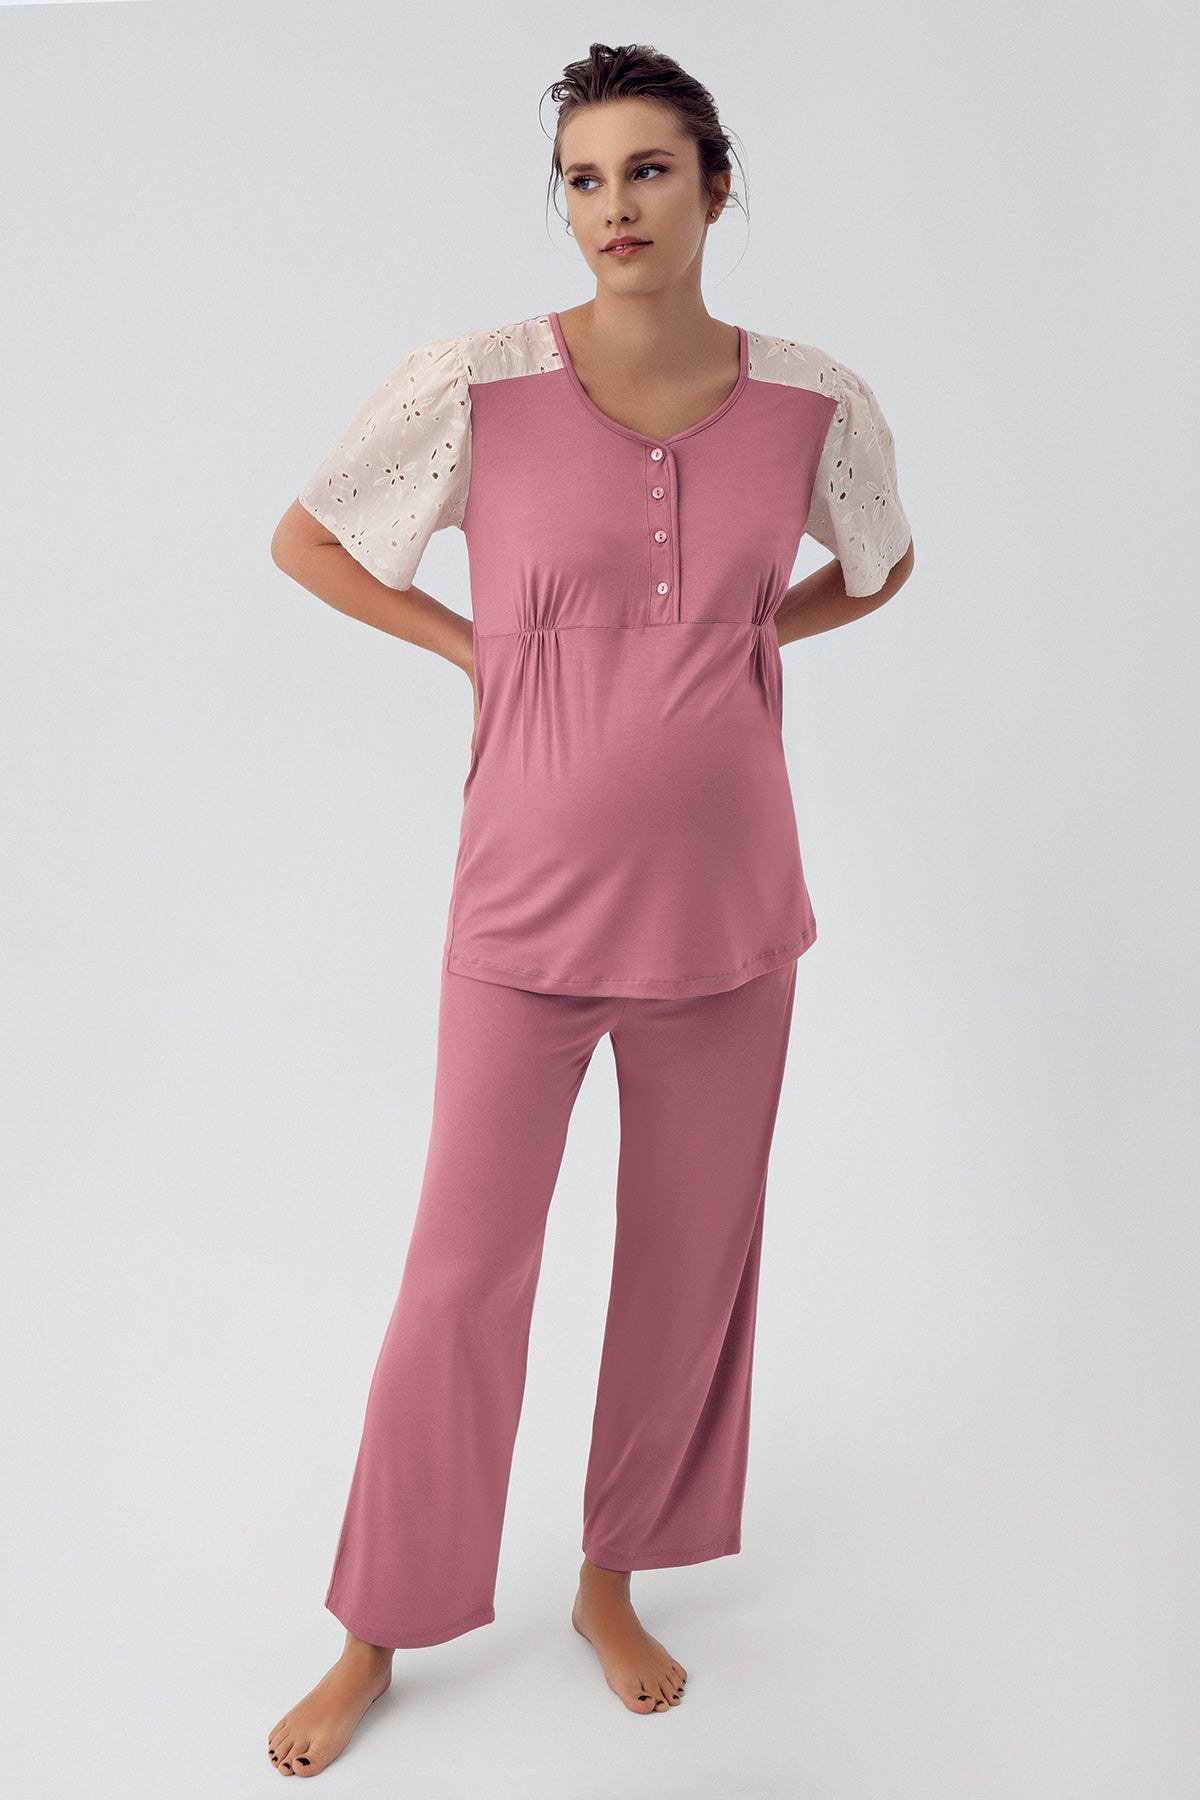 Shopymommy 16206 Lace Sleeve Maternity & Nursing Pajamas Dried Rose